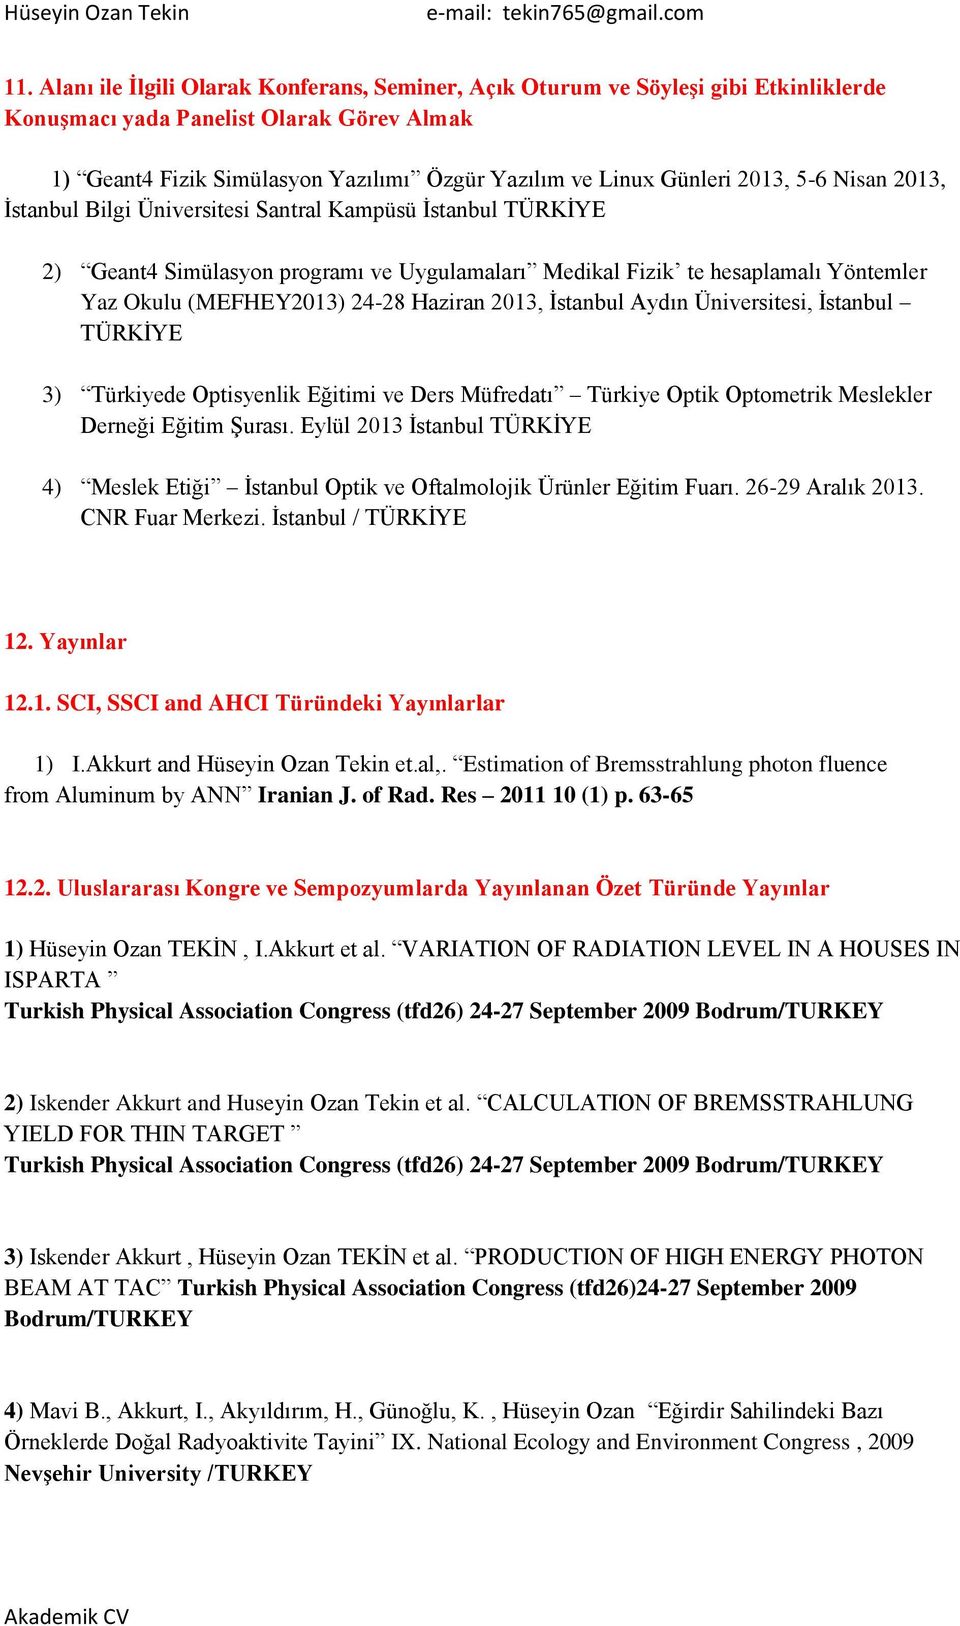 Haziran 2013, Ġstanbul Aydın Üniversitesi, Ġstanbul TÜRKĠYE 3) Türkiyede Optisyenlik Eğitimi ve Ders Müfredatı Türkiye Optik Optometrik Meslekler Derneği Eğitim ġurası.